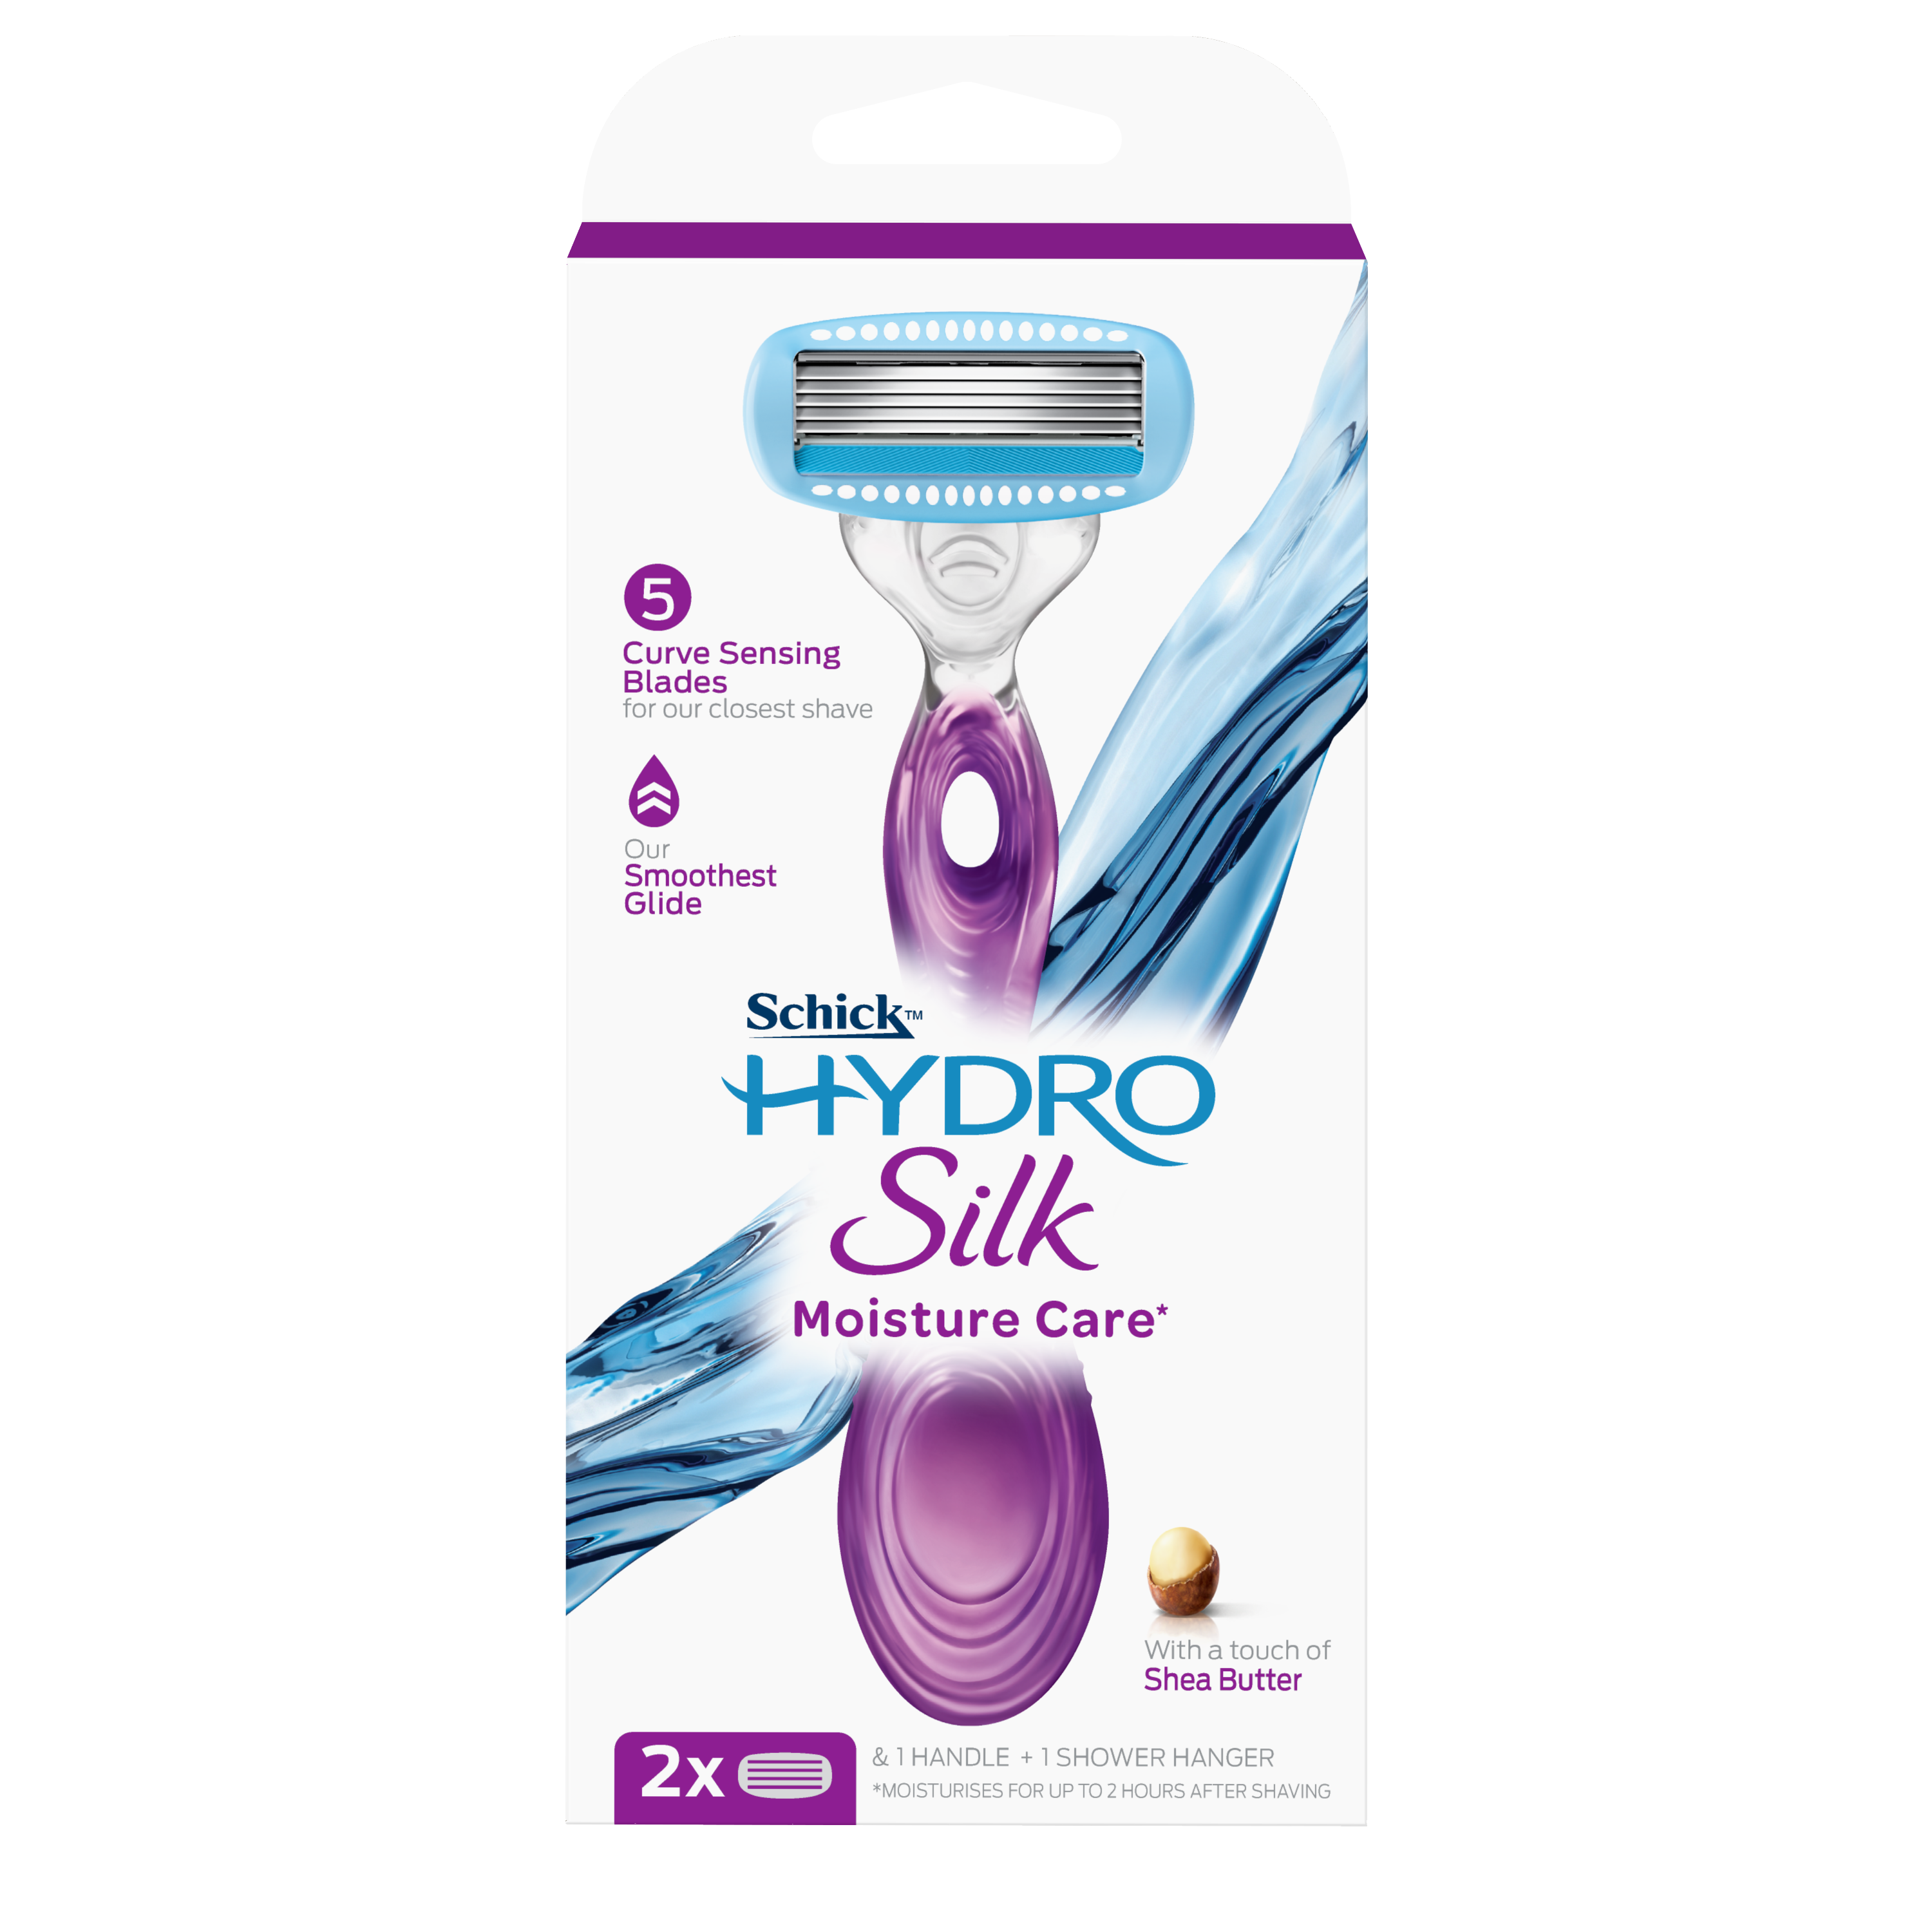 Hydro Silk Moisture Care* Razor